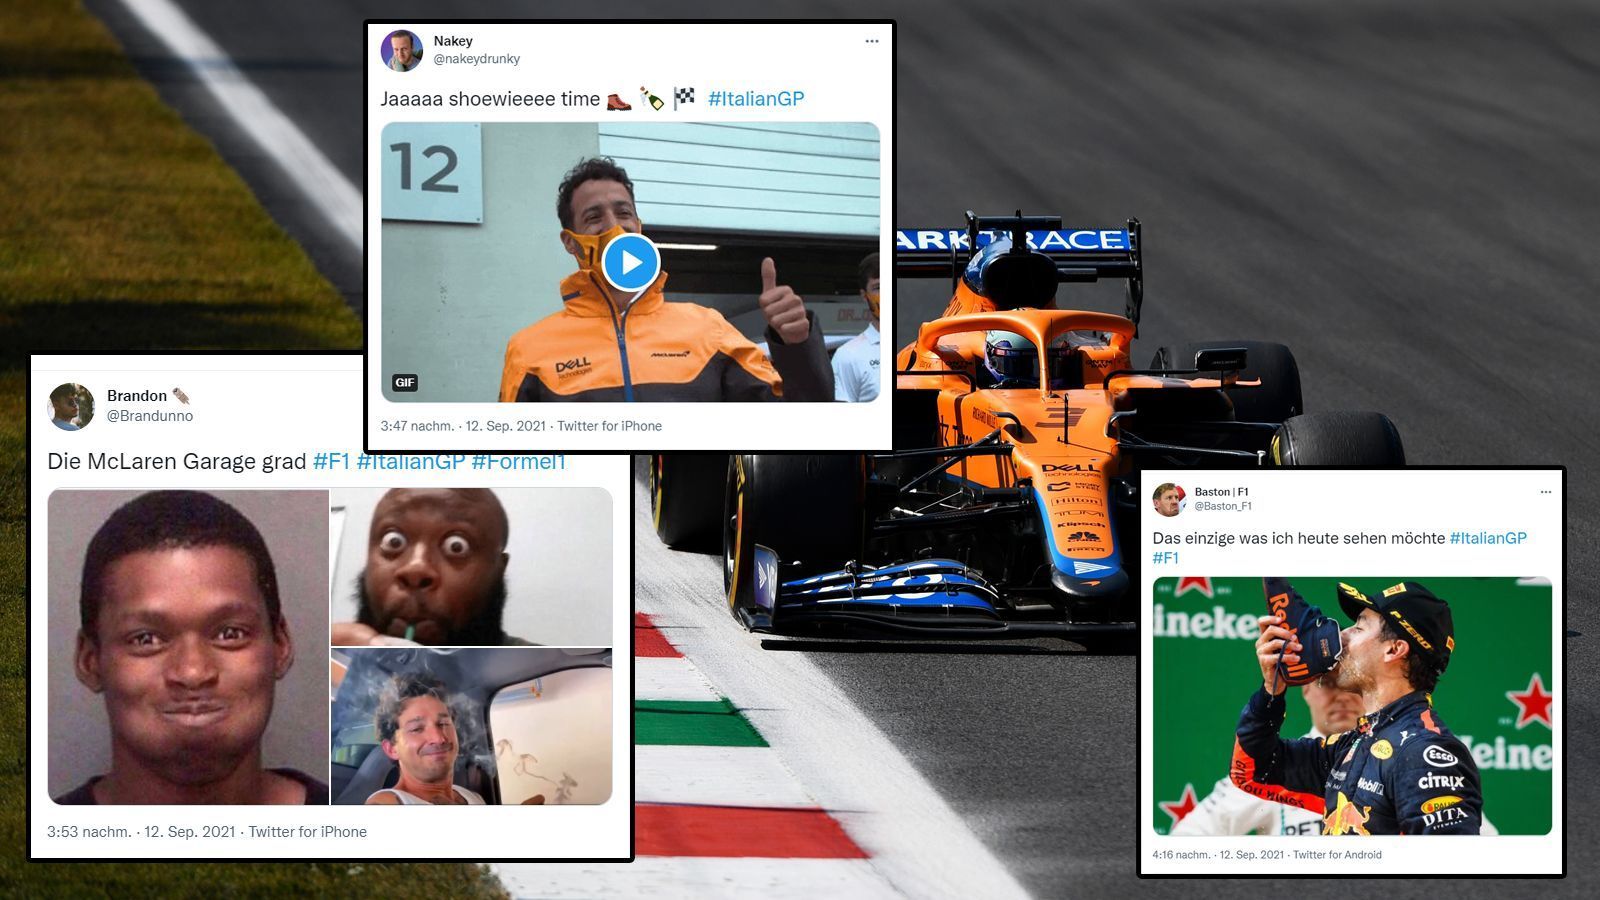 
                <strong>Daniel Ricciardo darf sich feiern lassen</strong><br>
                Am Ende darf sich McLaren als großer Tagessieger feiern lassen. Was das für Daniel Ricciardo auf dem Podium bedeutet, wissen wir alle. Unbedingt hingucken möchten wir jedoch nicht. In diesem Sinne: Shooeeeeeeeeey!
              